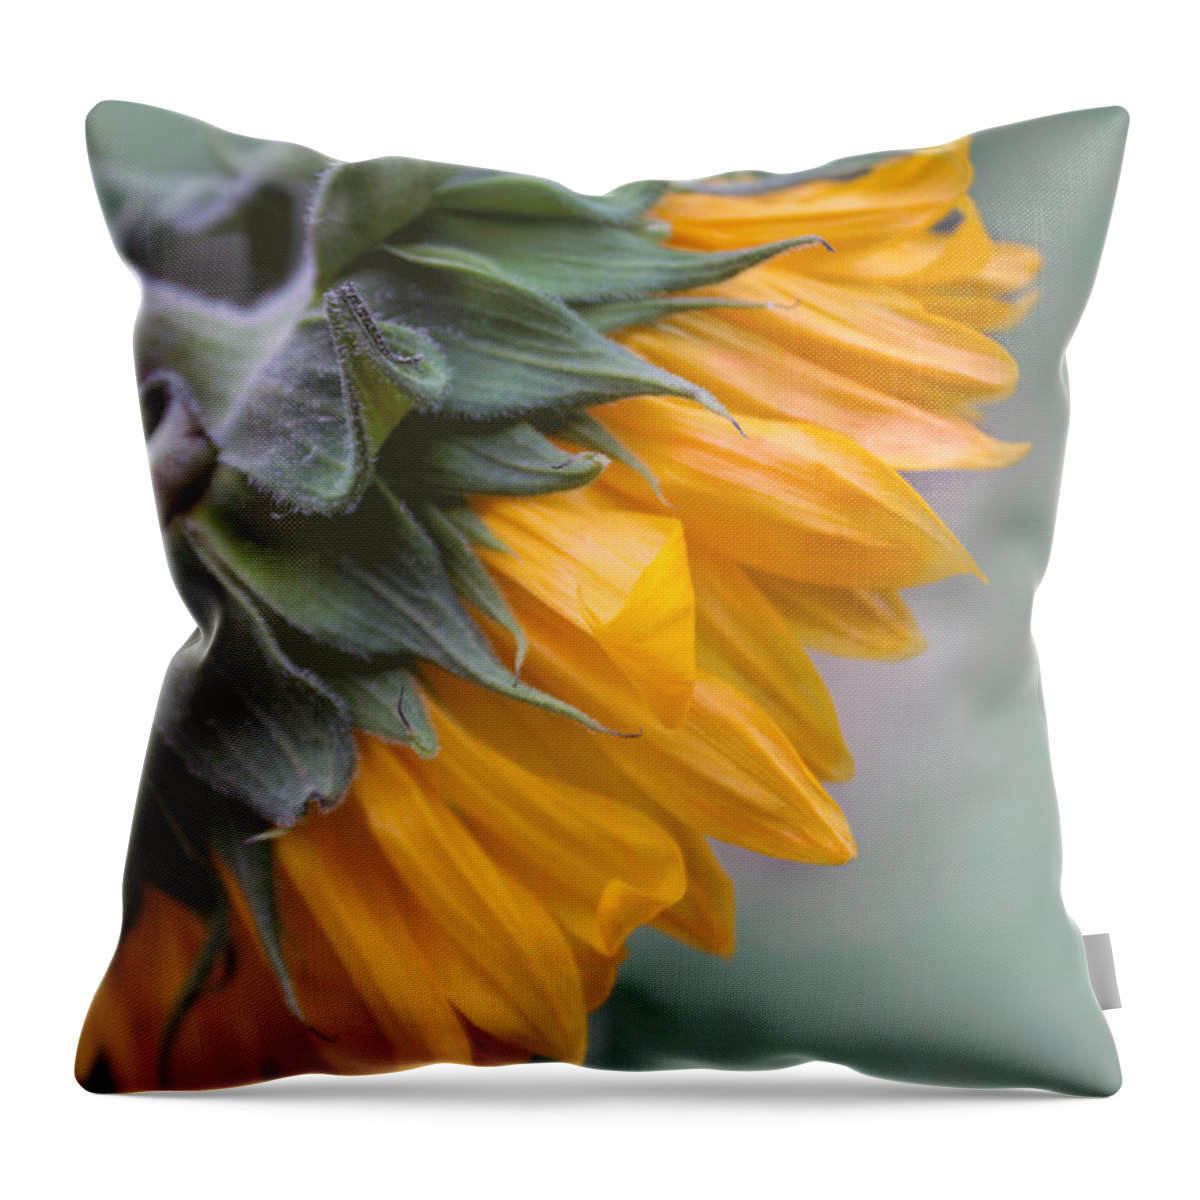 Sunflower Throw Pillow featuring the photograph Sunflower Haze by Arlene Carmel